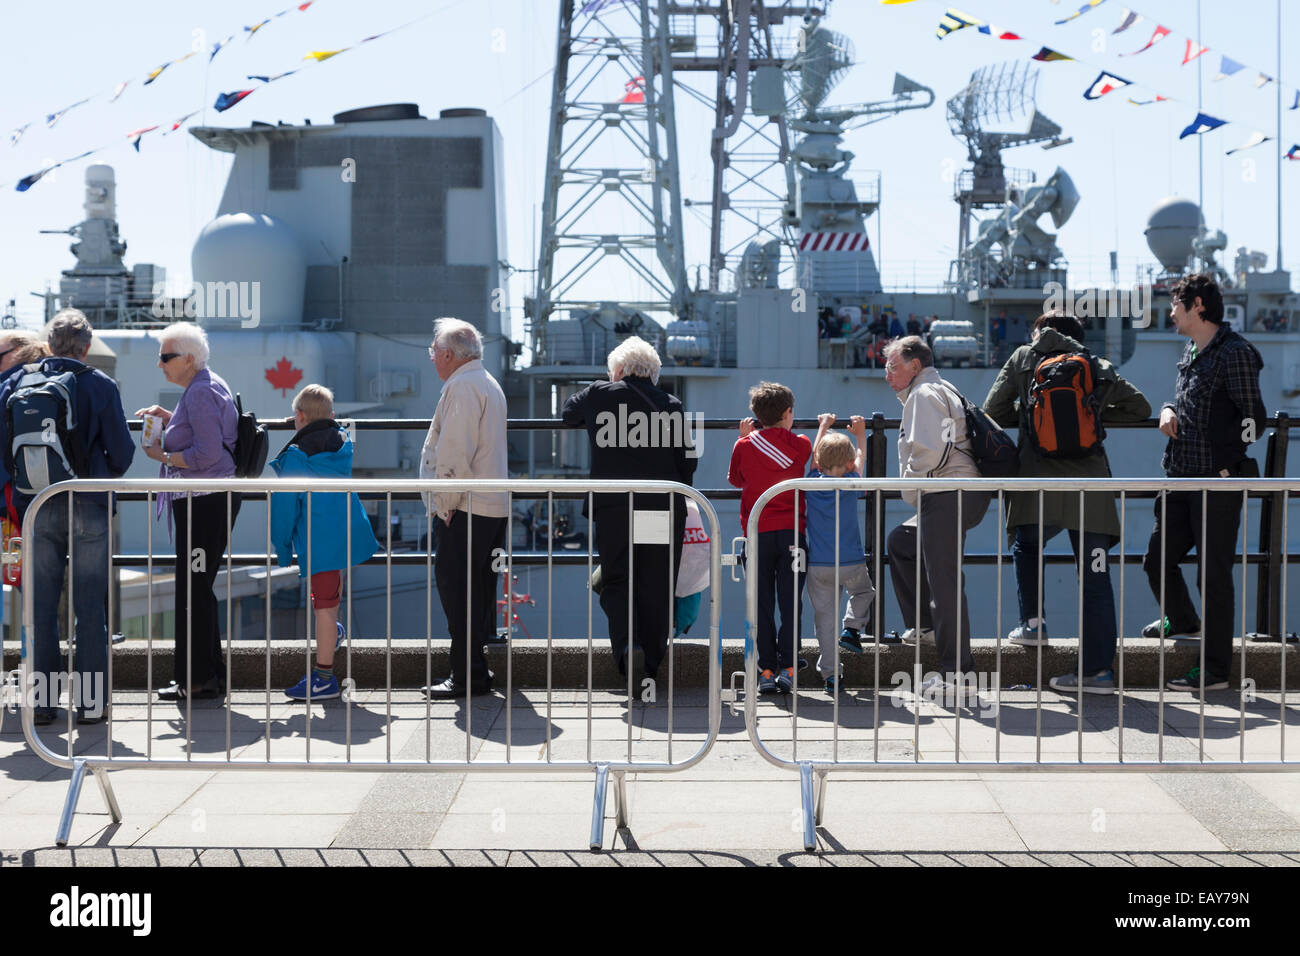 Menschen Schlange stehen, um Board kanadischen Zerstörer HMCS Iriquois in Liverpool zum 70. Jahrestag der Schlacht des Atlantiks. Stockfoto